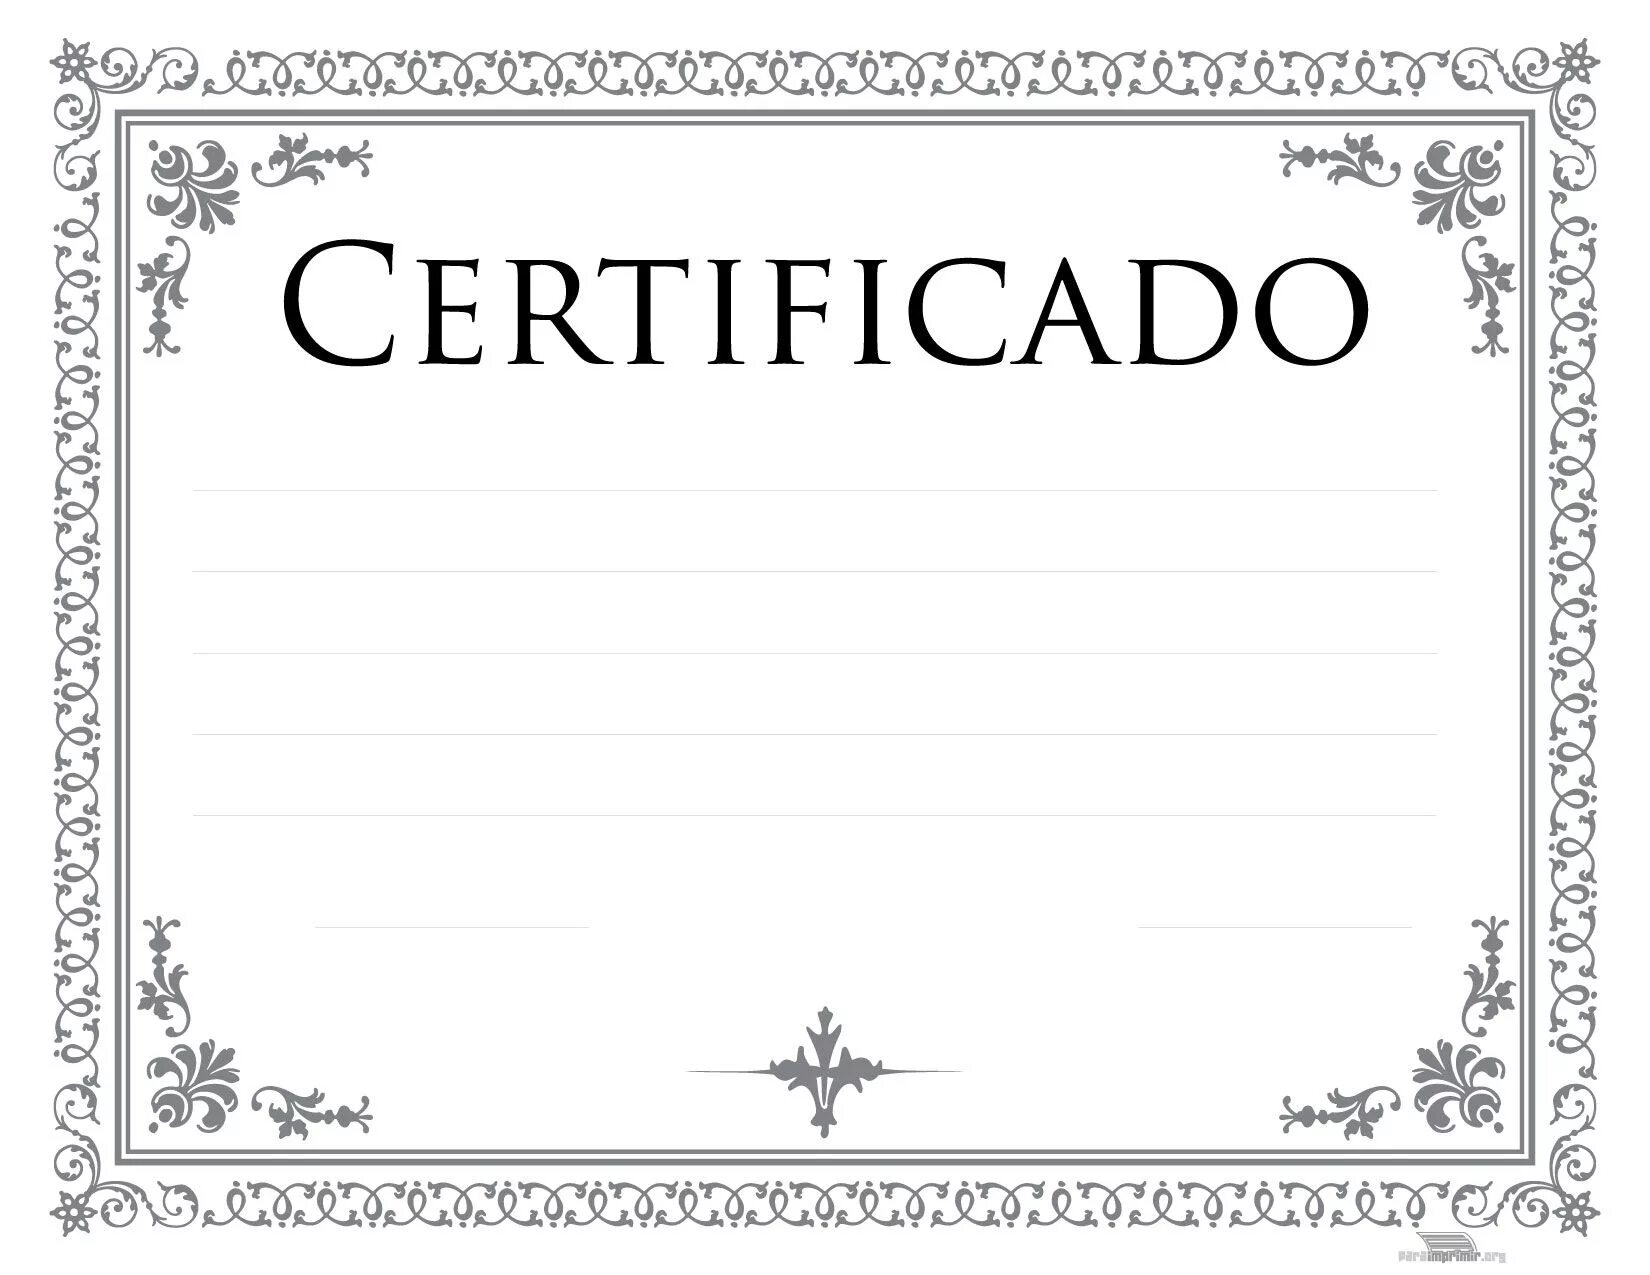 Сертификат красивый бланк. Красивая рамка для диплома. Векторные рамки для сертификатов. Рамка для грамоты чрнобелая.